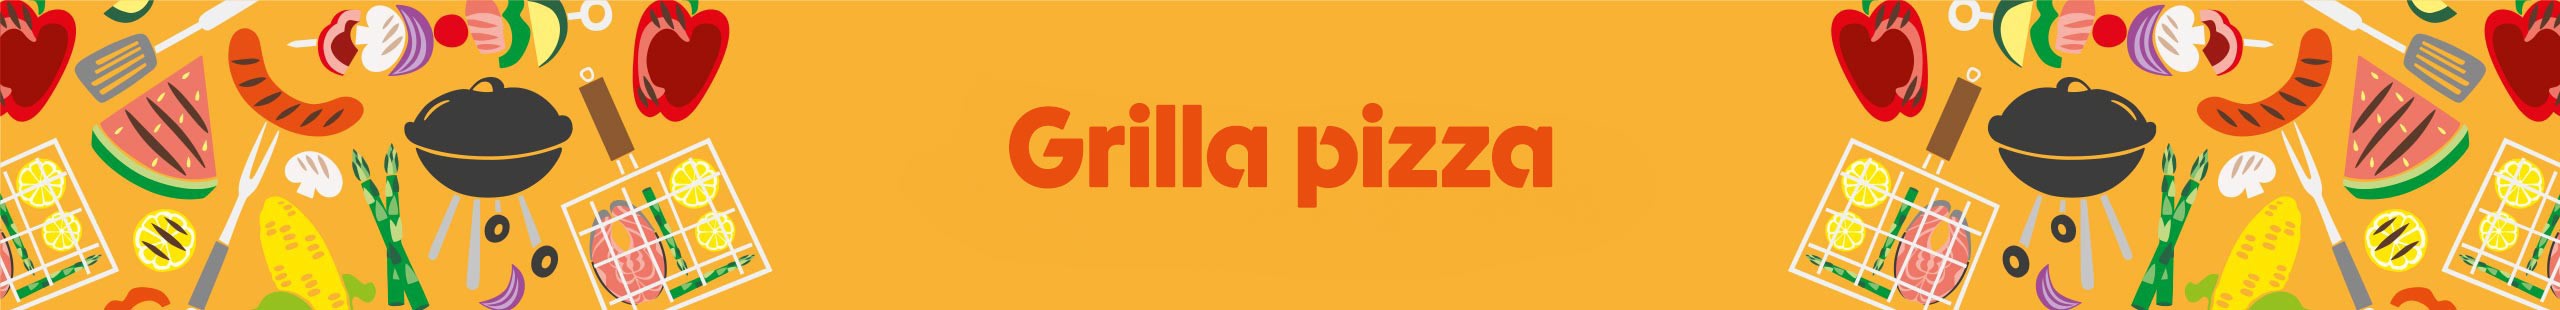 Grilla pizza